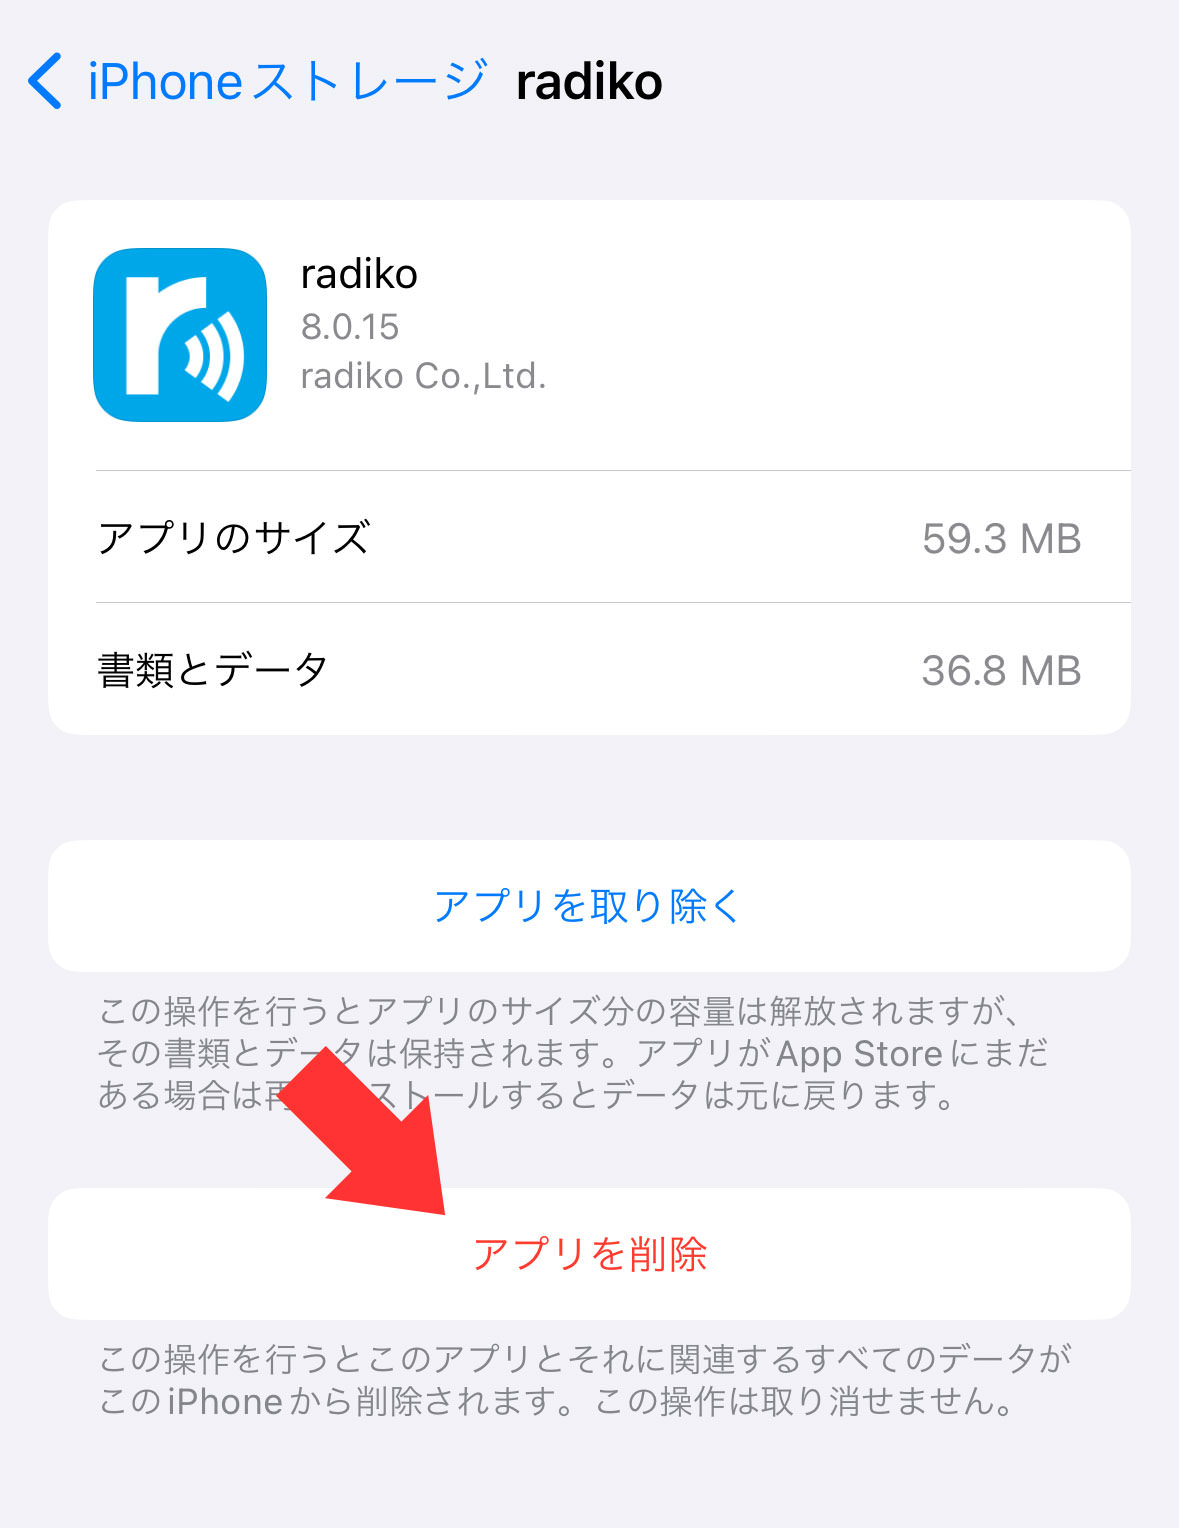 iOSの radiko(ラジコ) アプリが毎日のようにログアウトして困る。解決策は！？